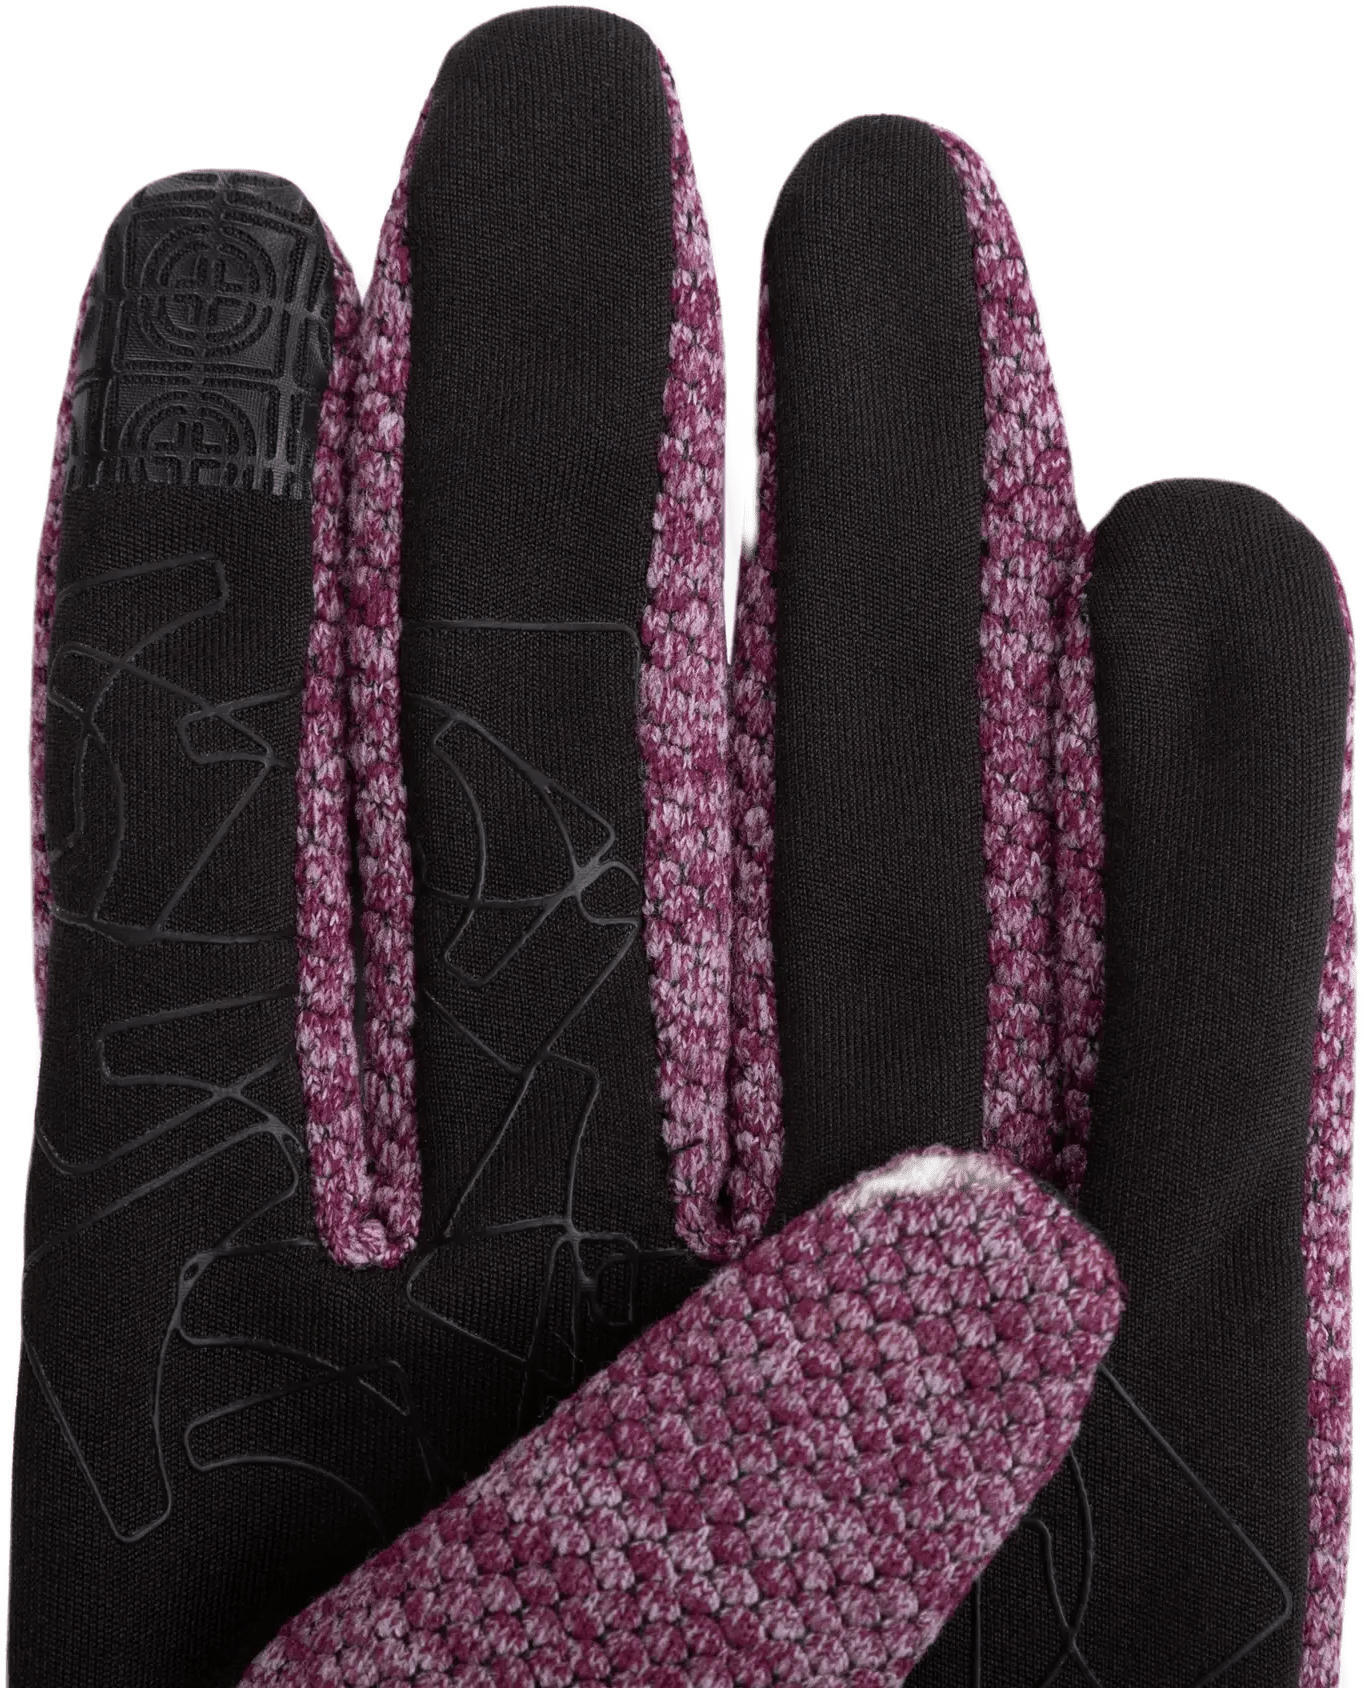 Перчатки Trekmates Harland Glove TM-006305 aubergine - L - фиолетовый/черный фото 2